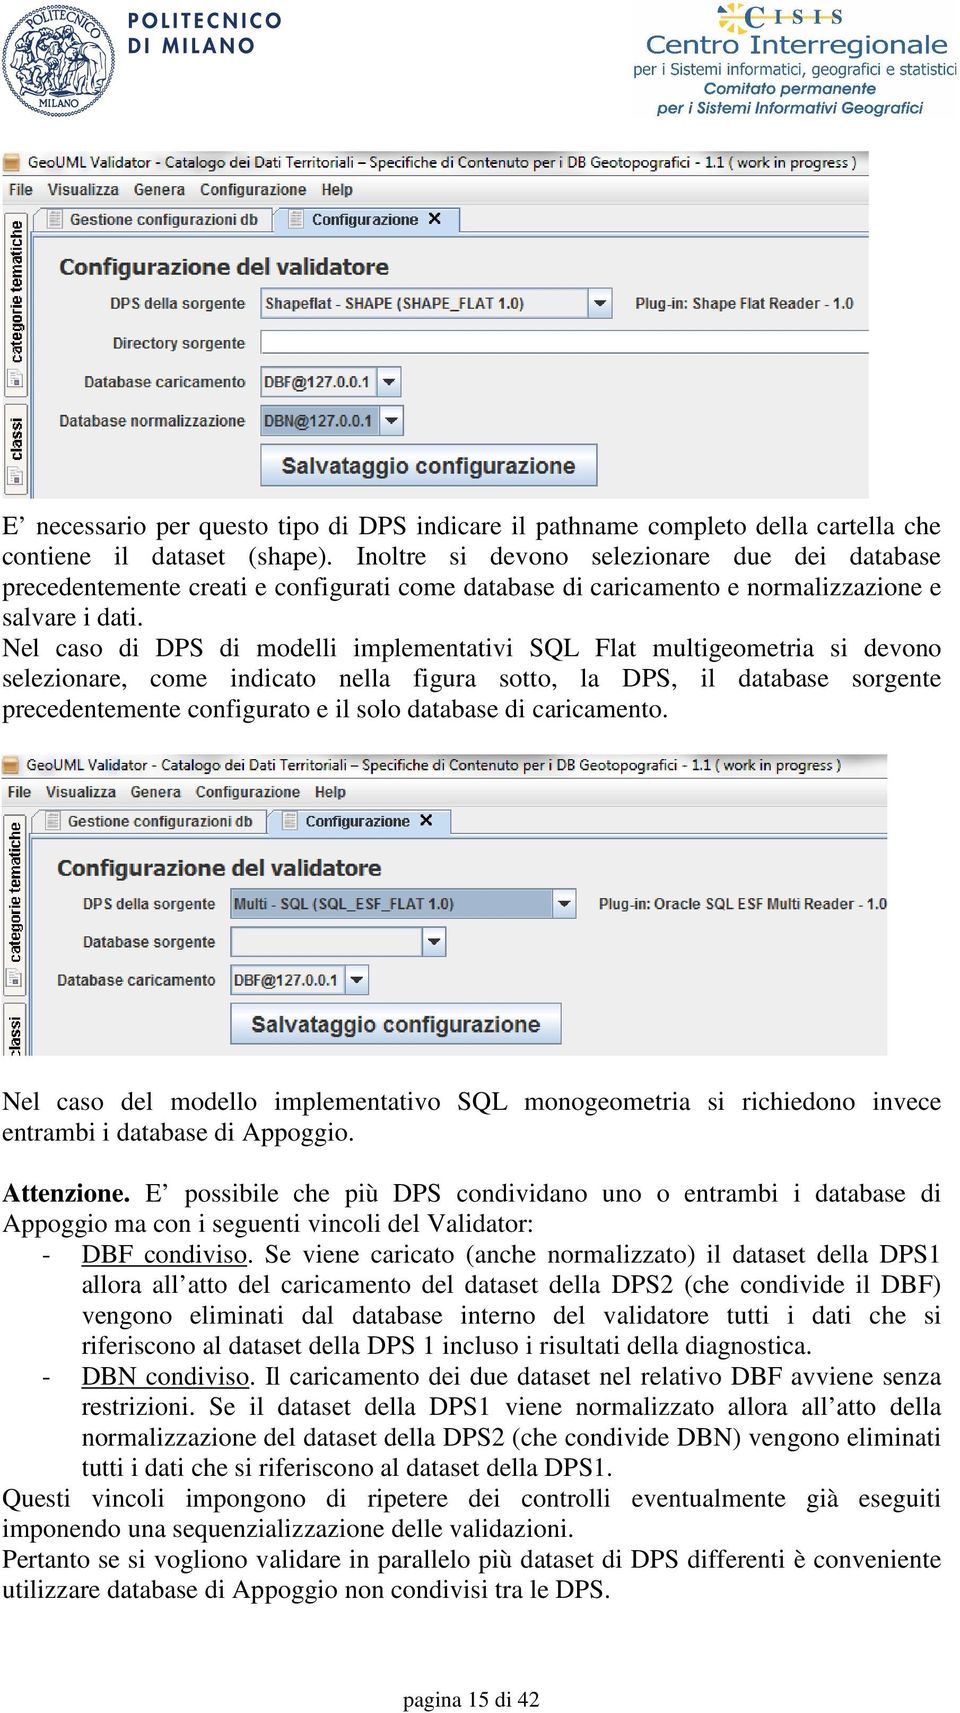 Nel caso di DPS di modelli implementativi SQL Flat multigeometria si devono selezionare, come indicato nella figura sotto, la DPS, il database sorgente precedentemente configurato e il solo database